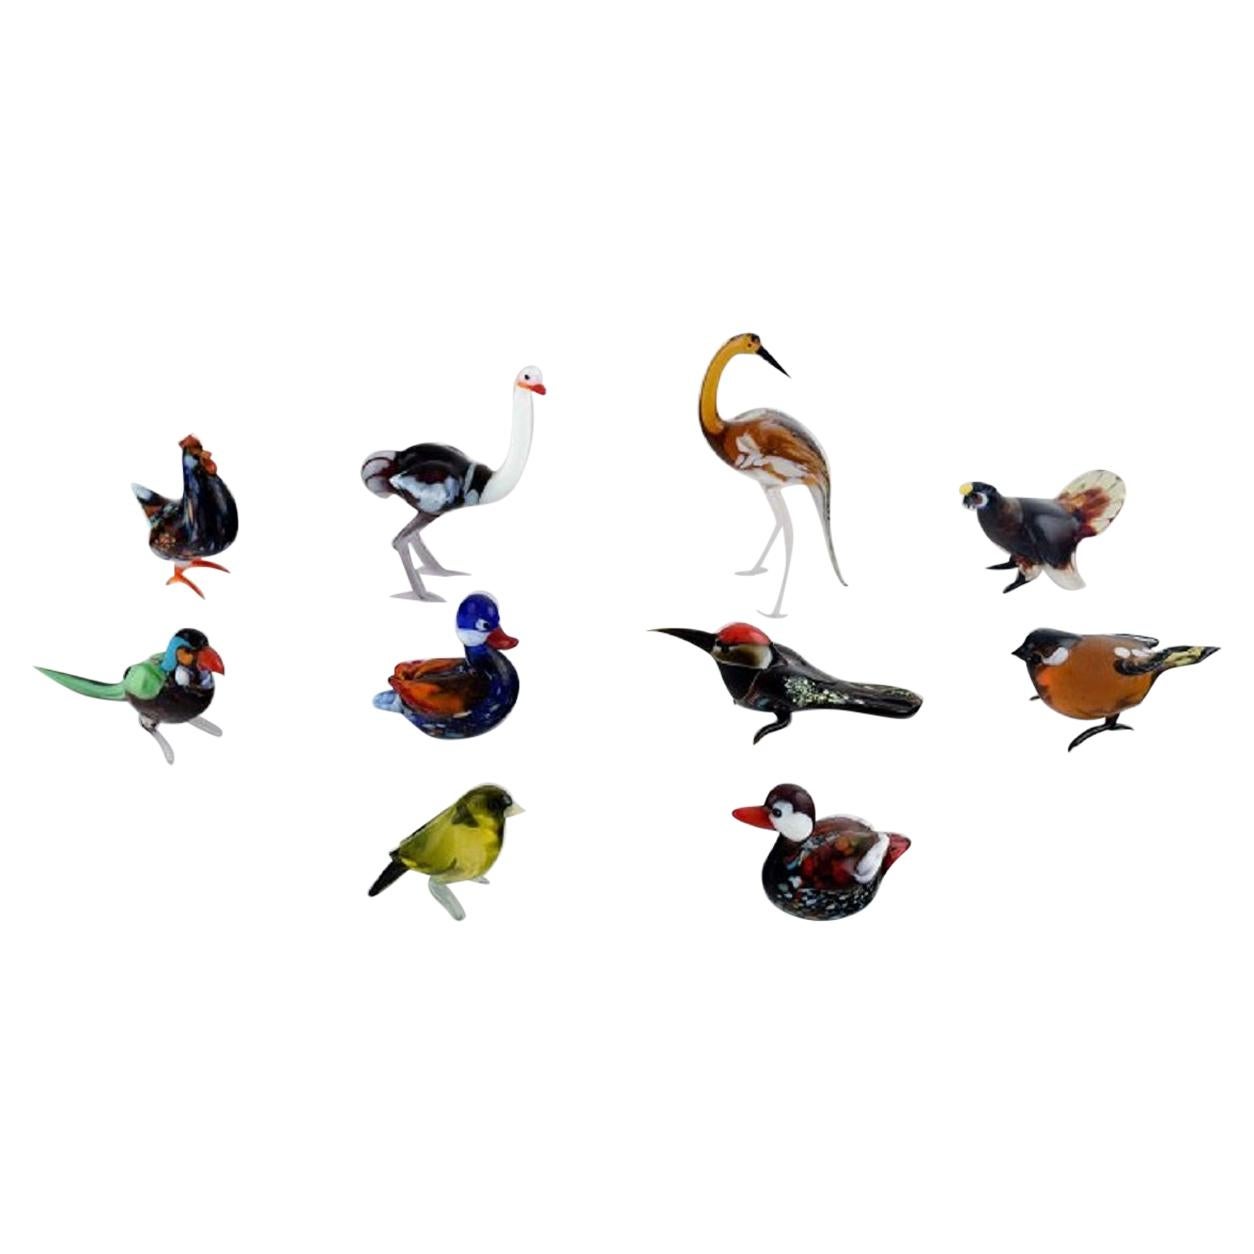 Swedish Art Glass, Ten Miniature Figures in the Form of Birds, 1970s-1980s